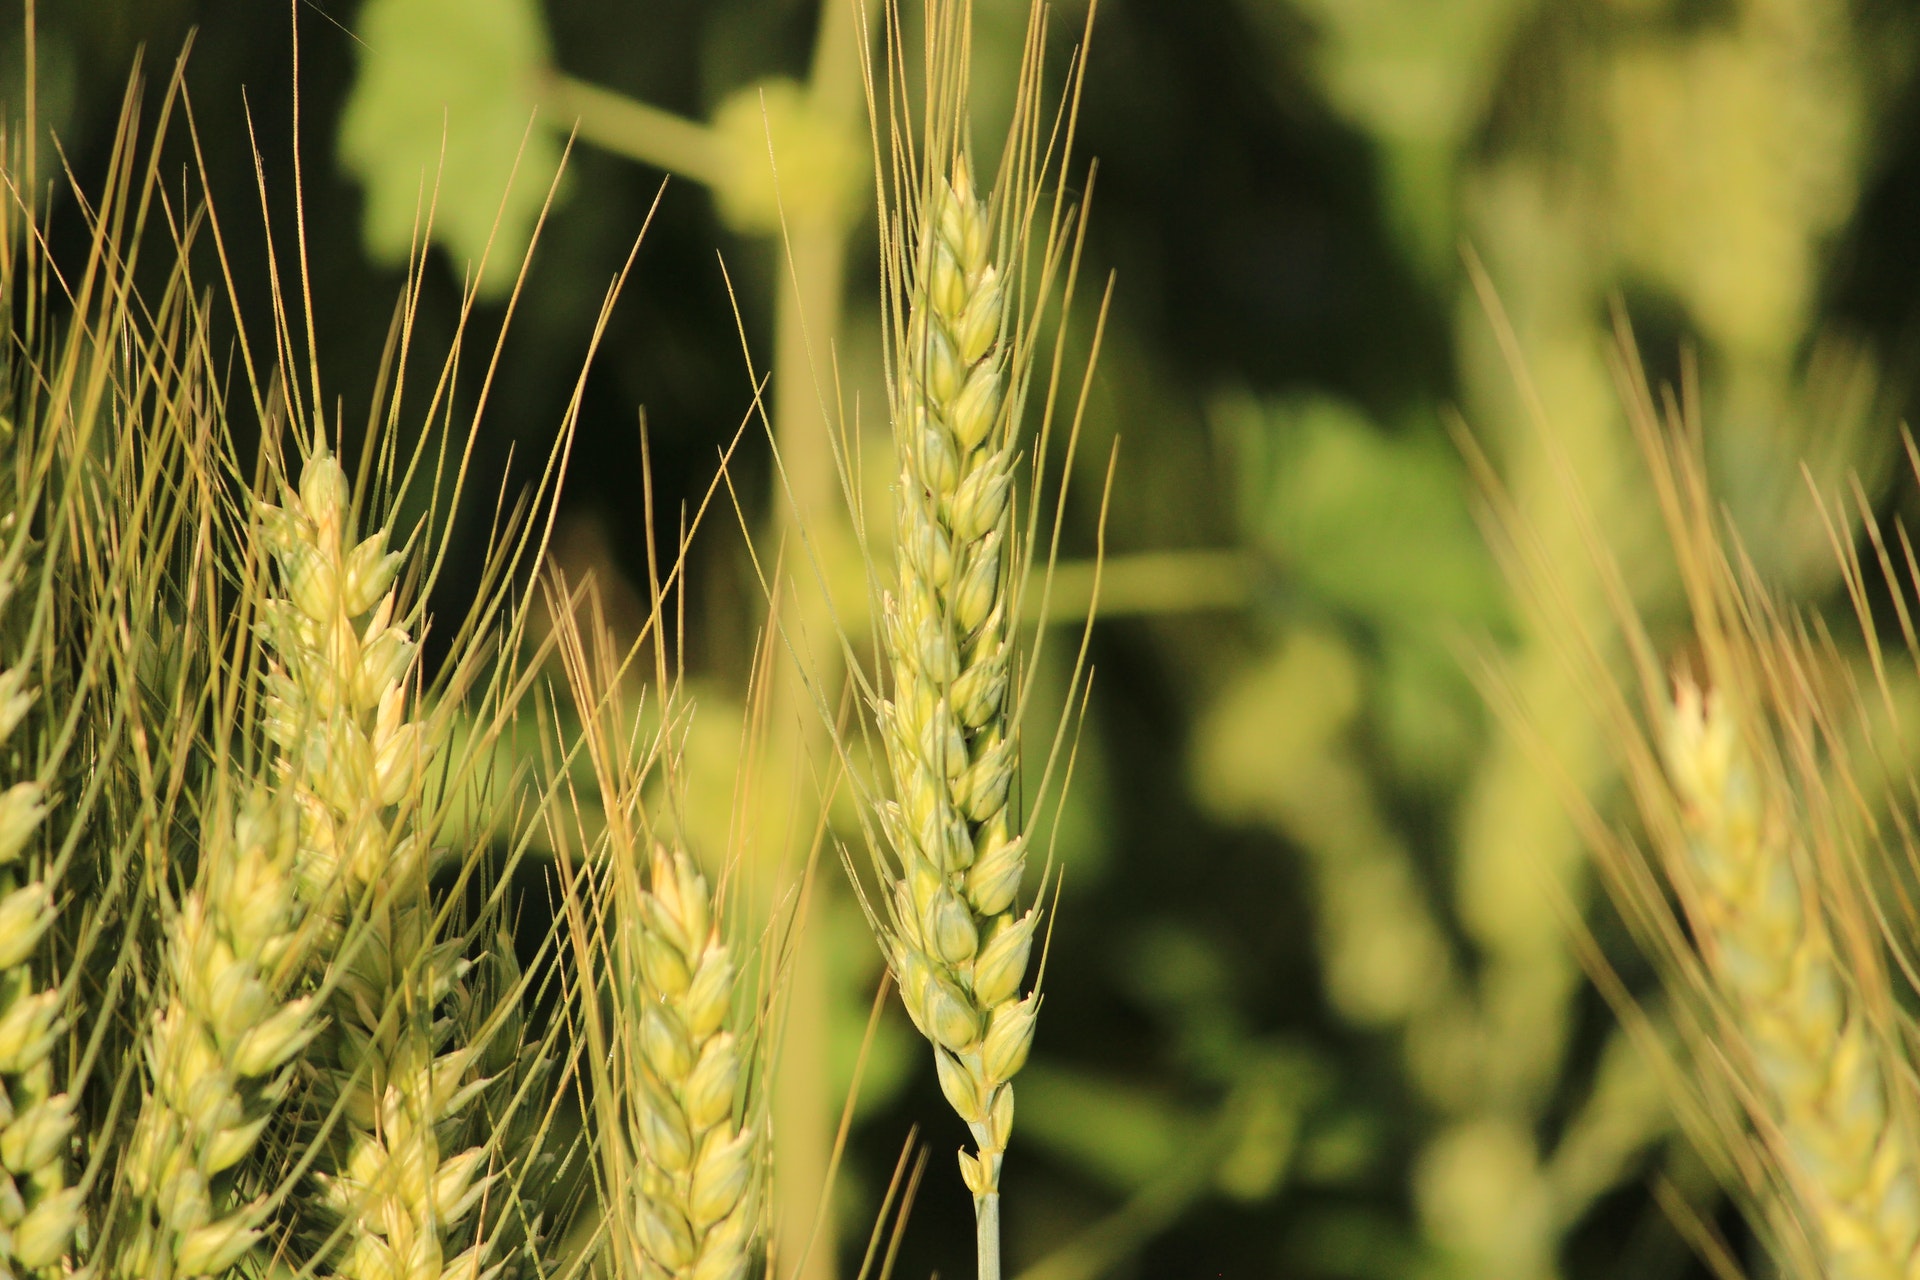 Close up image of barley